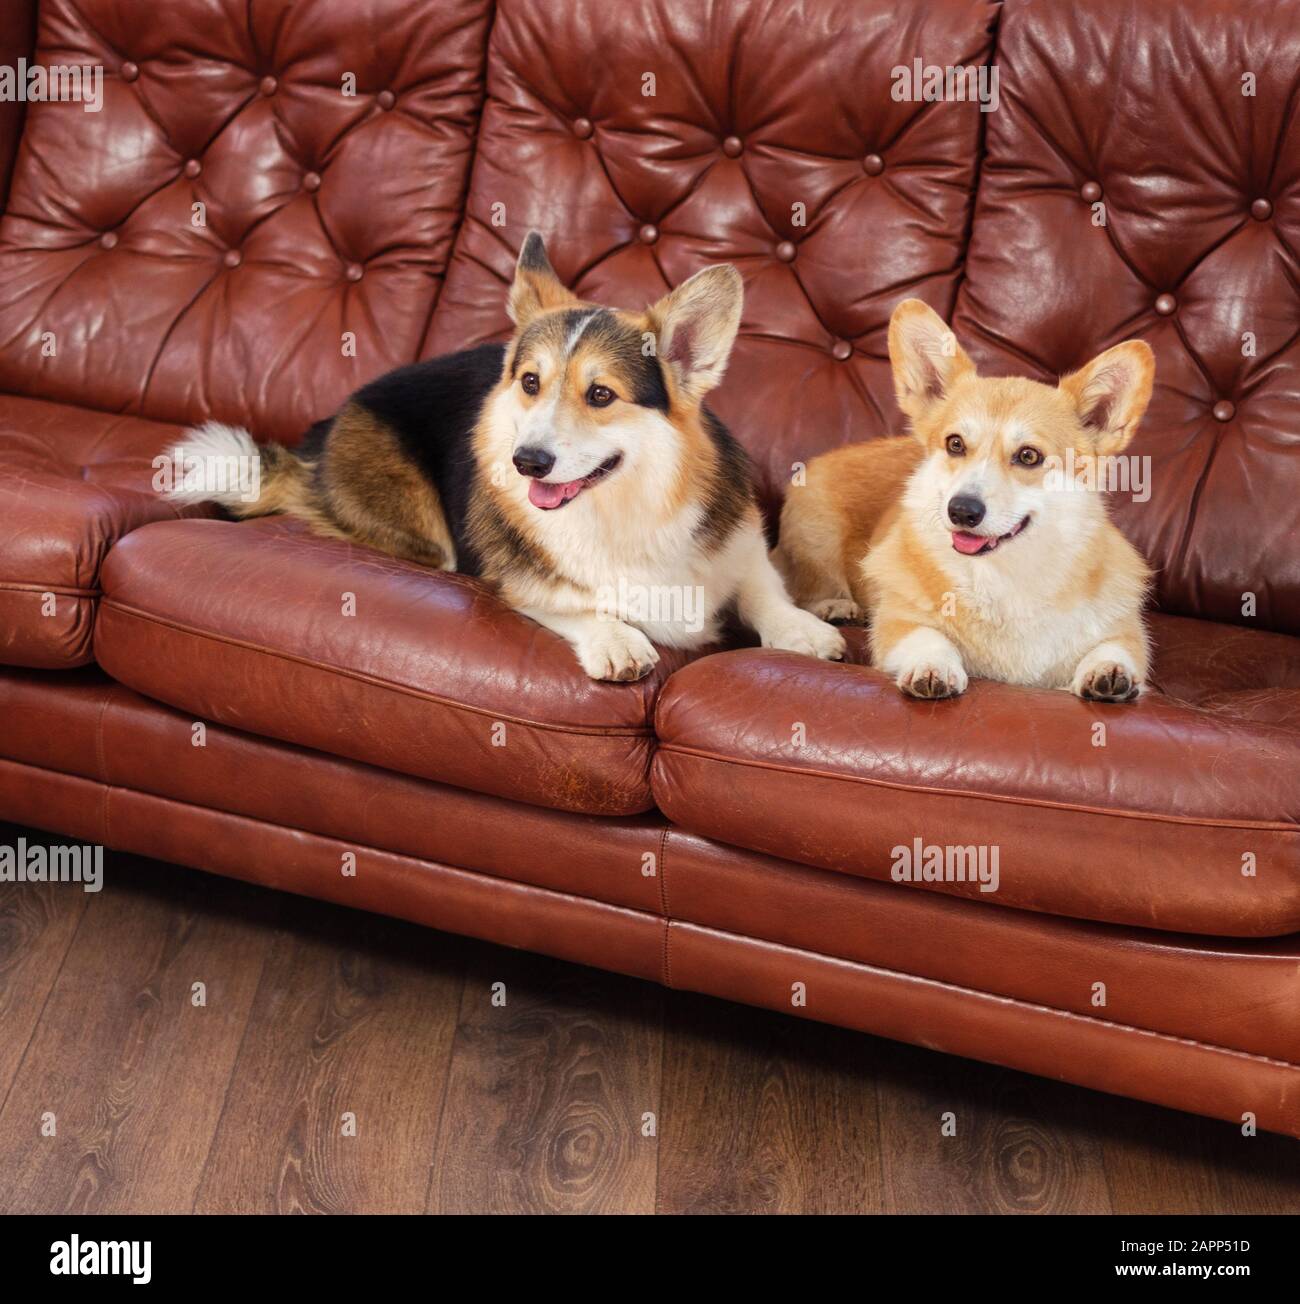 Two cute corgi dogs on a sofa Stock Photo